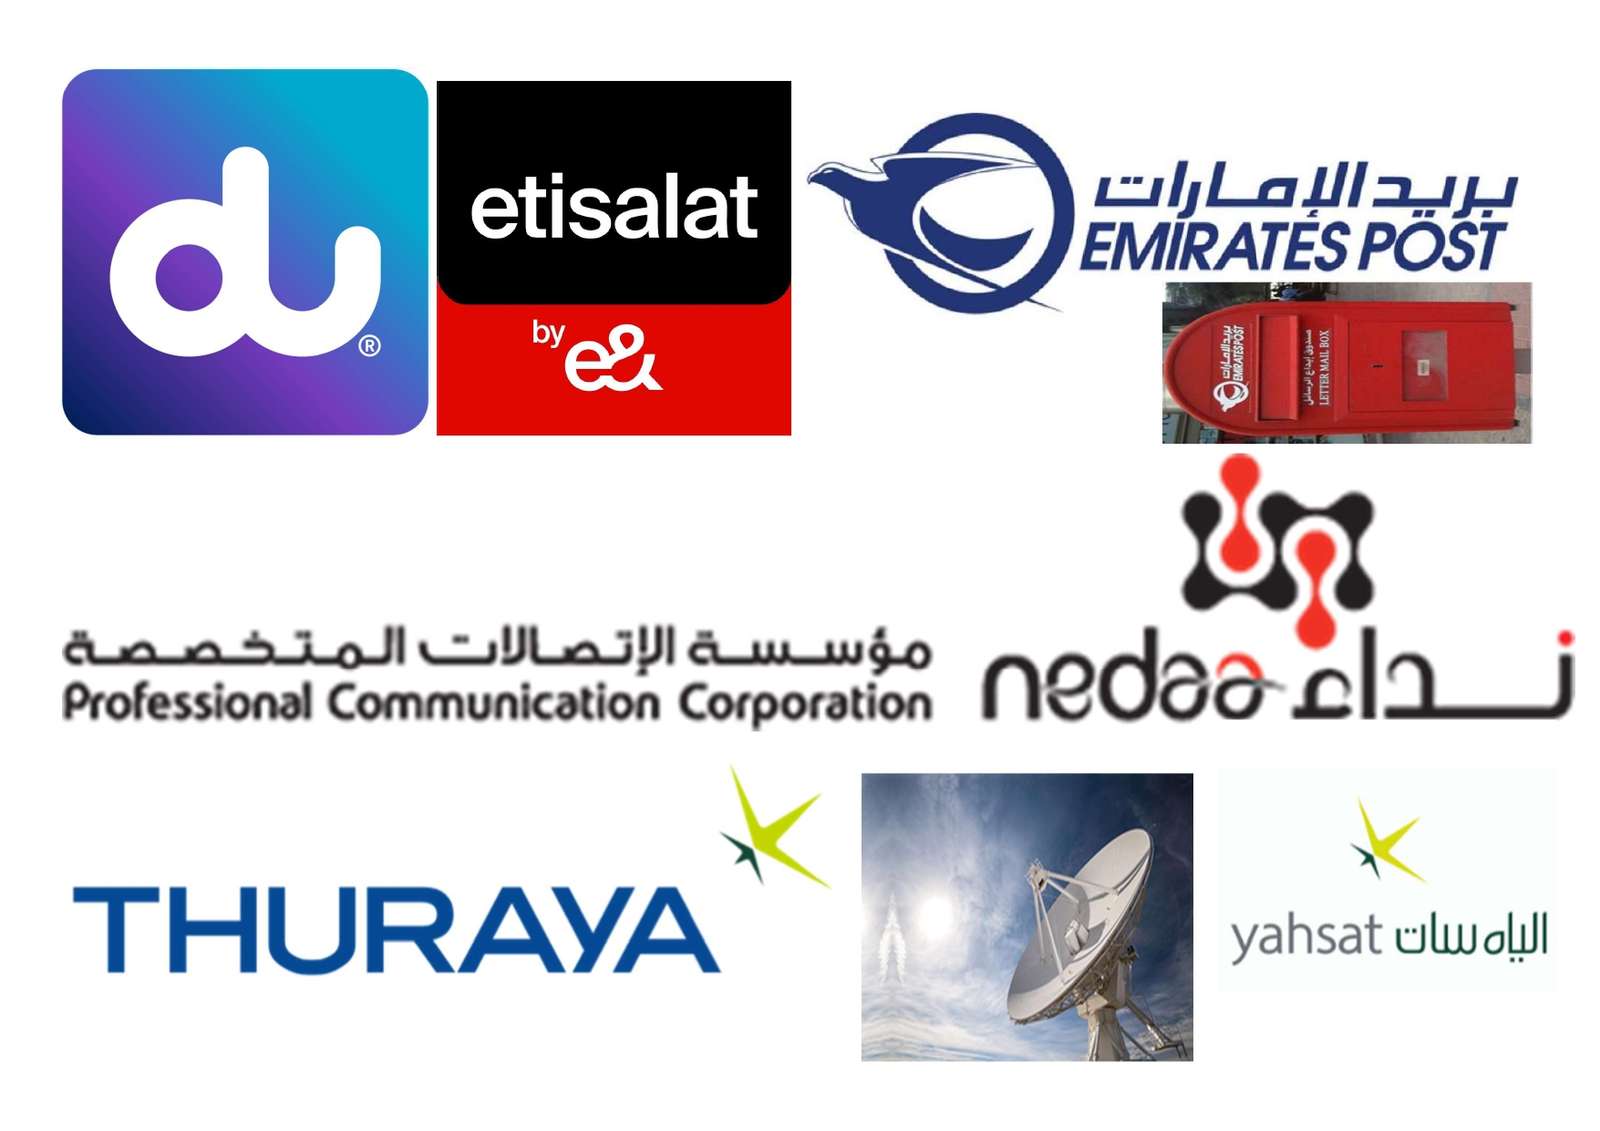 アラブ首長国連邦でのコミュニケーション オンラインパズル